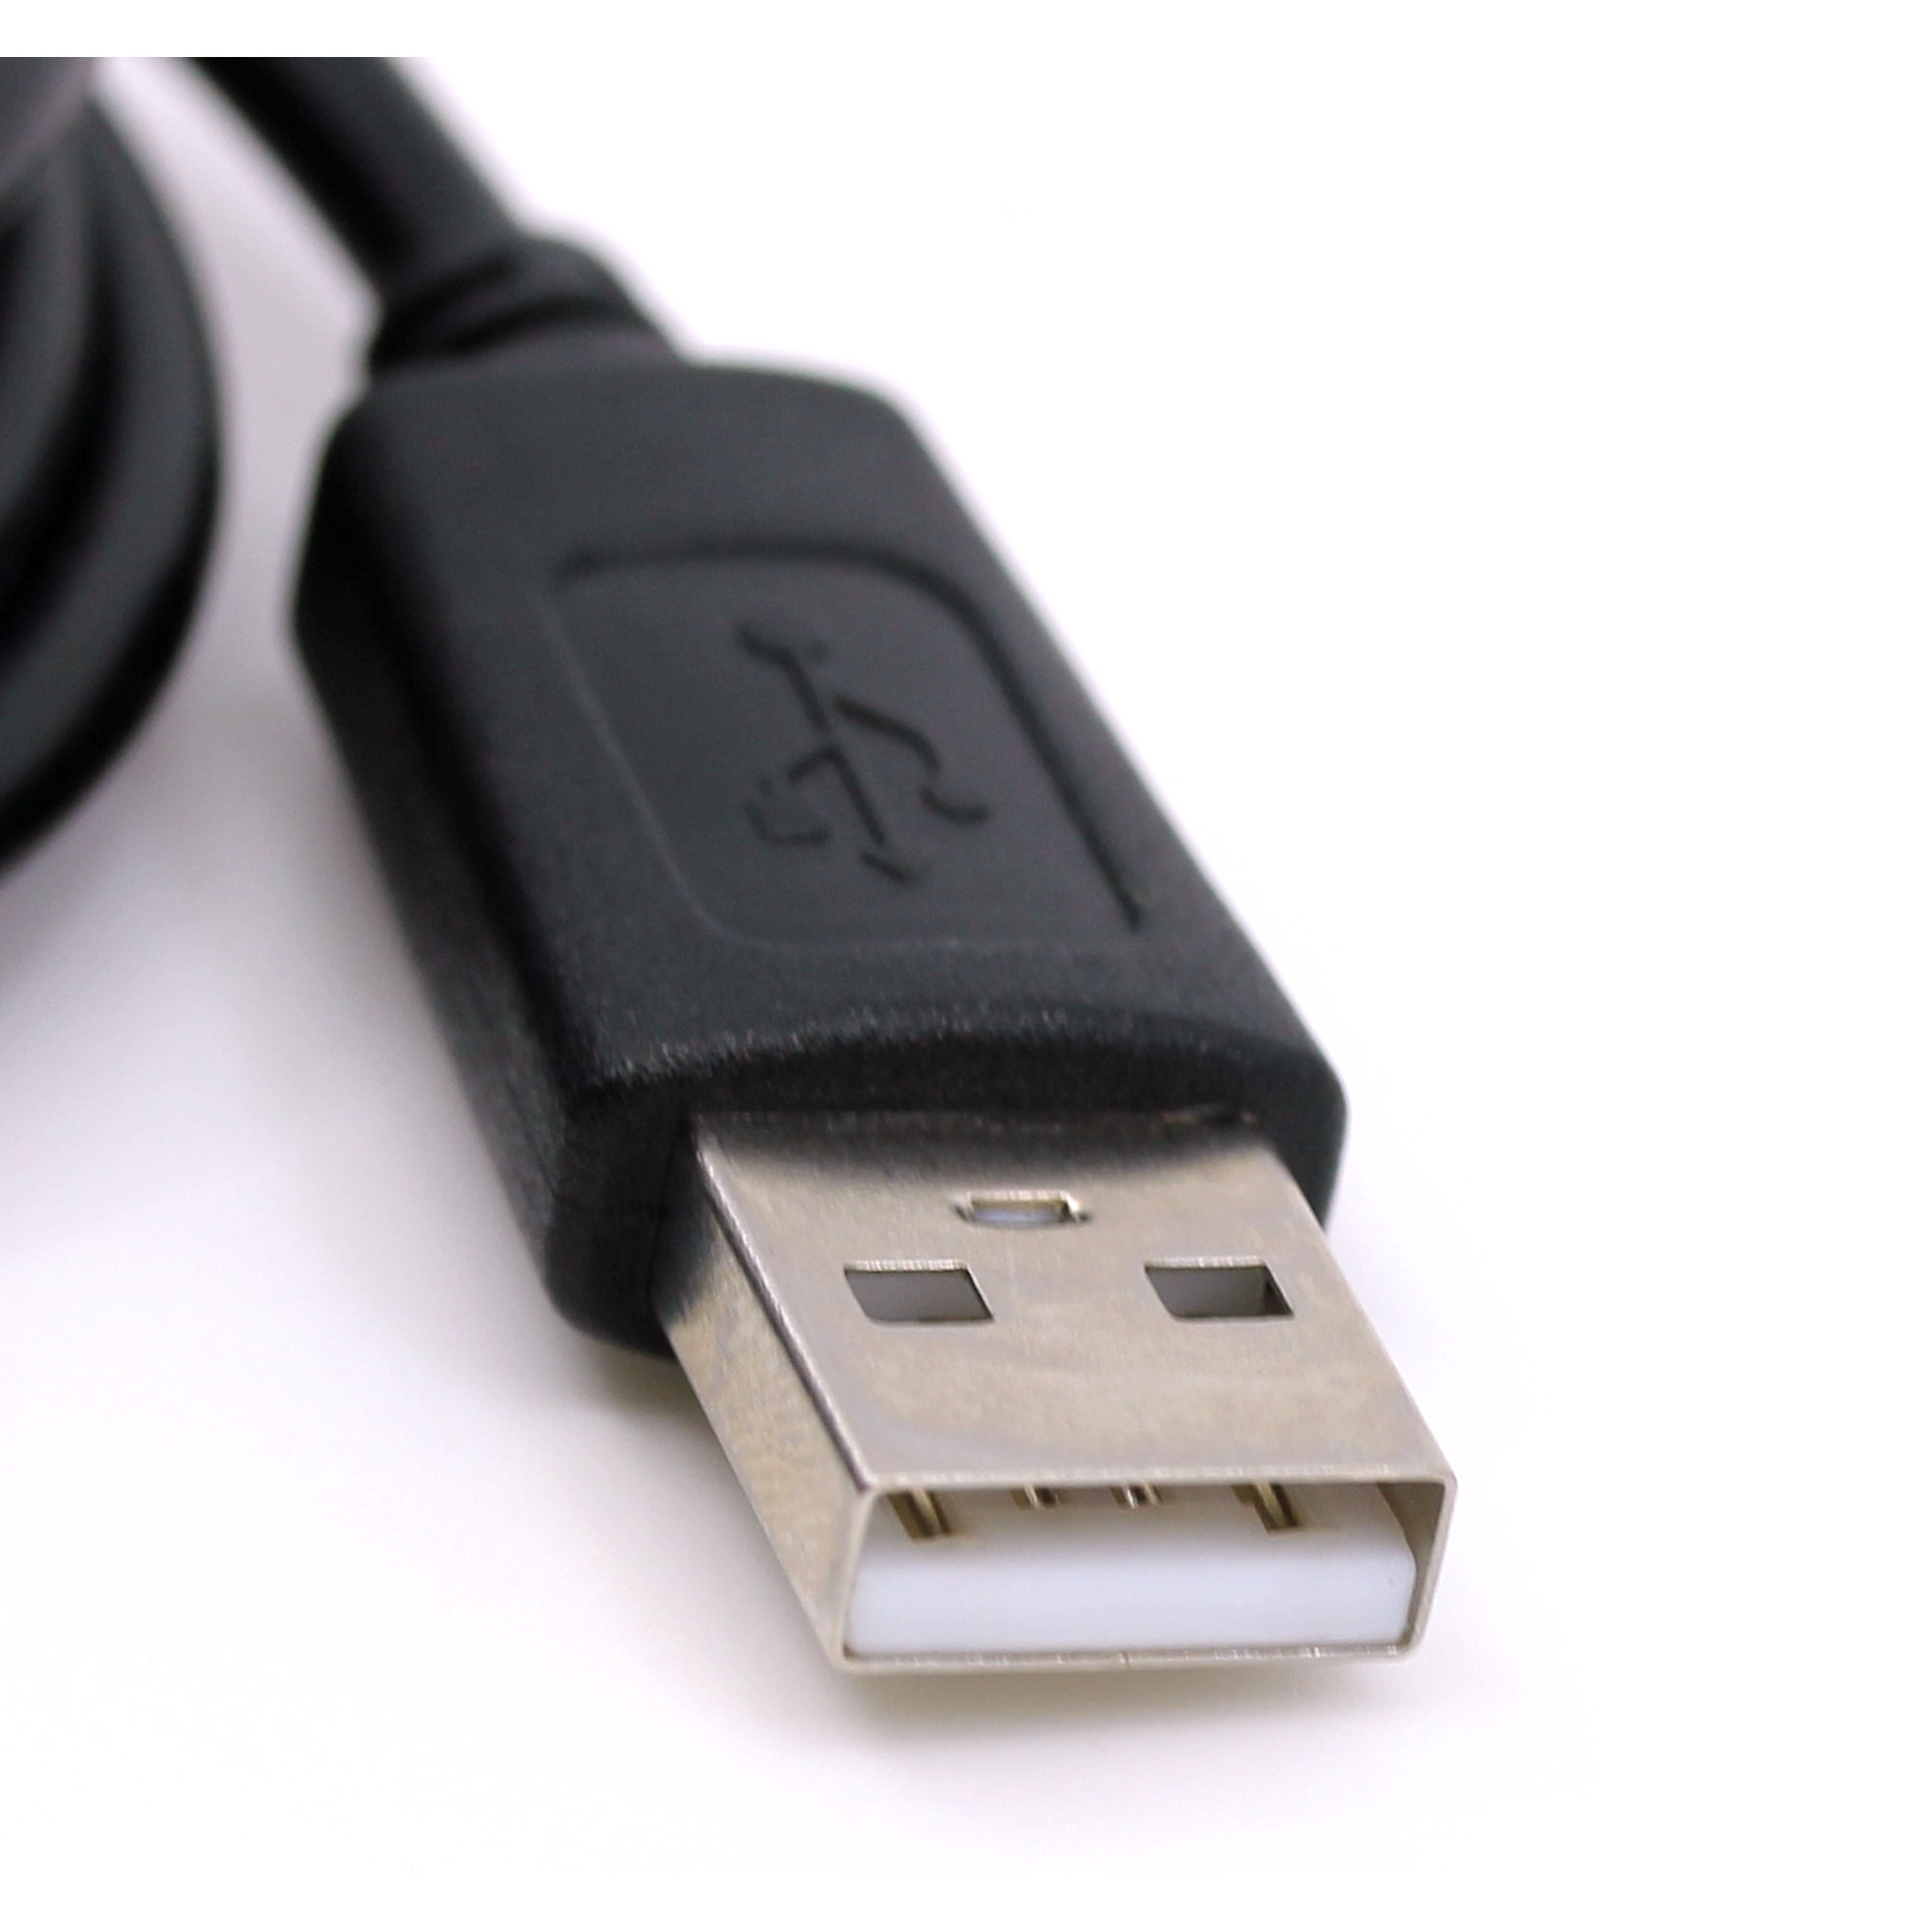 USB Datenkabel für Casio CFX-9850GA Plus, CFX-9970G, CFX-9850GB Plus, CFX-9950GB Plus, CFX-9850GC